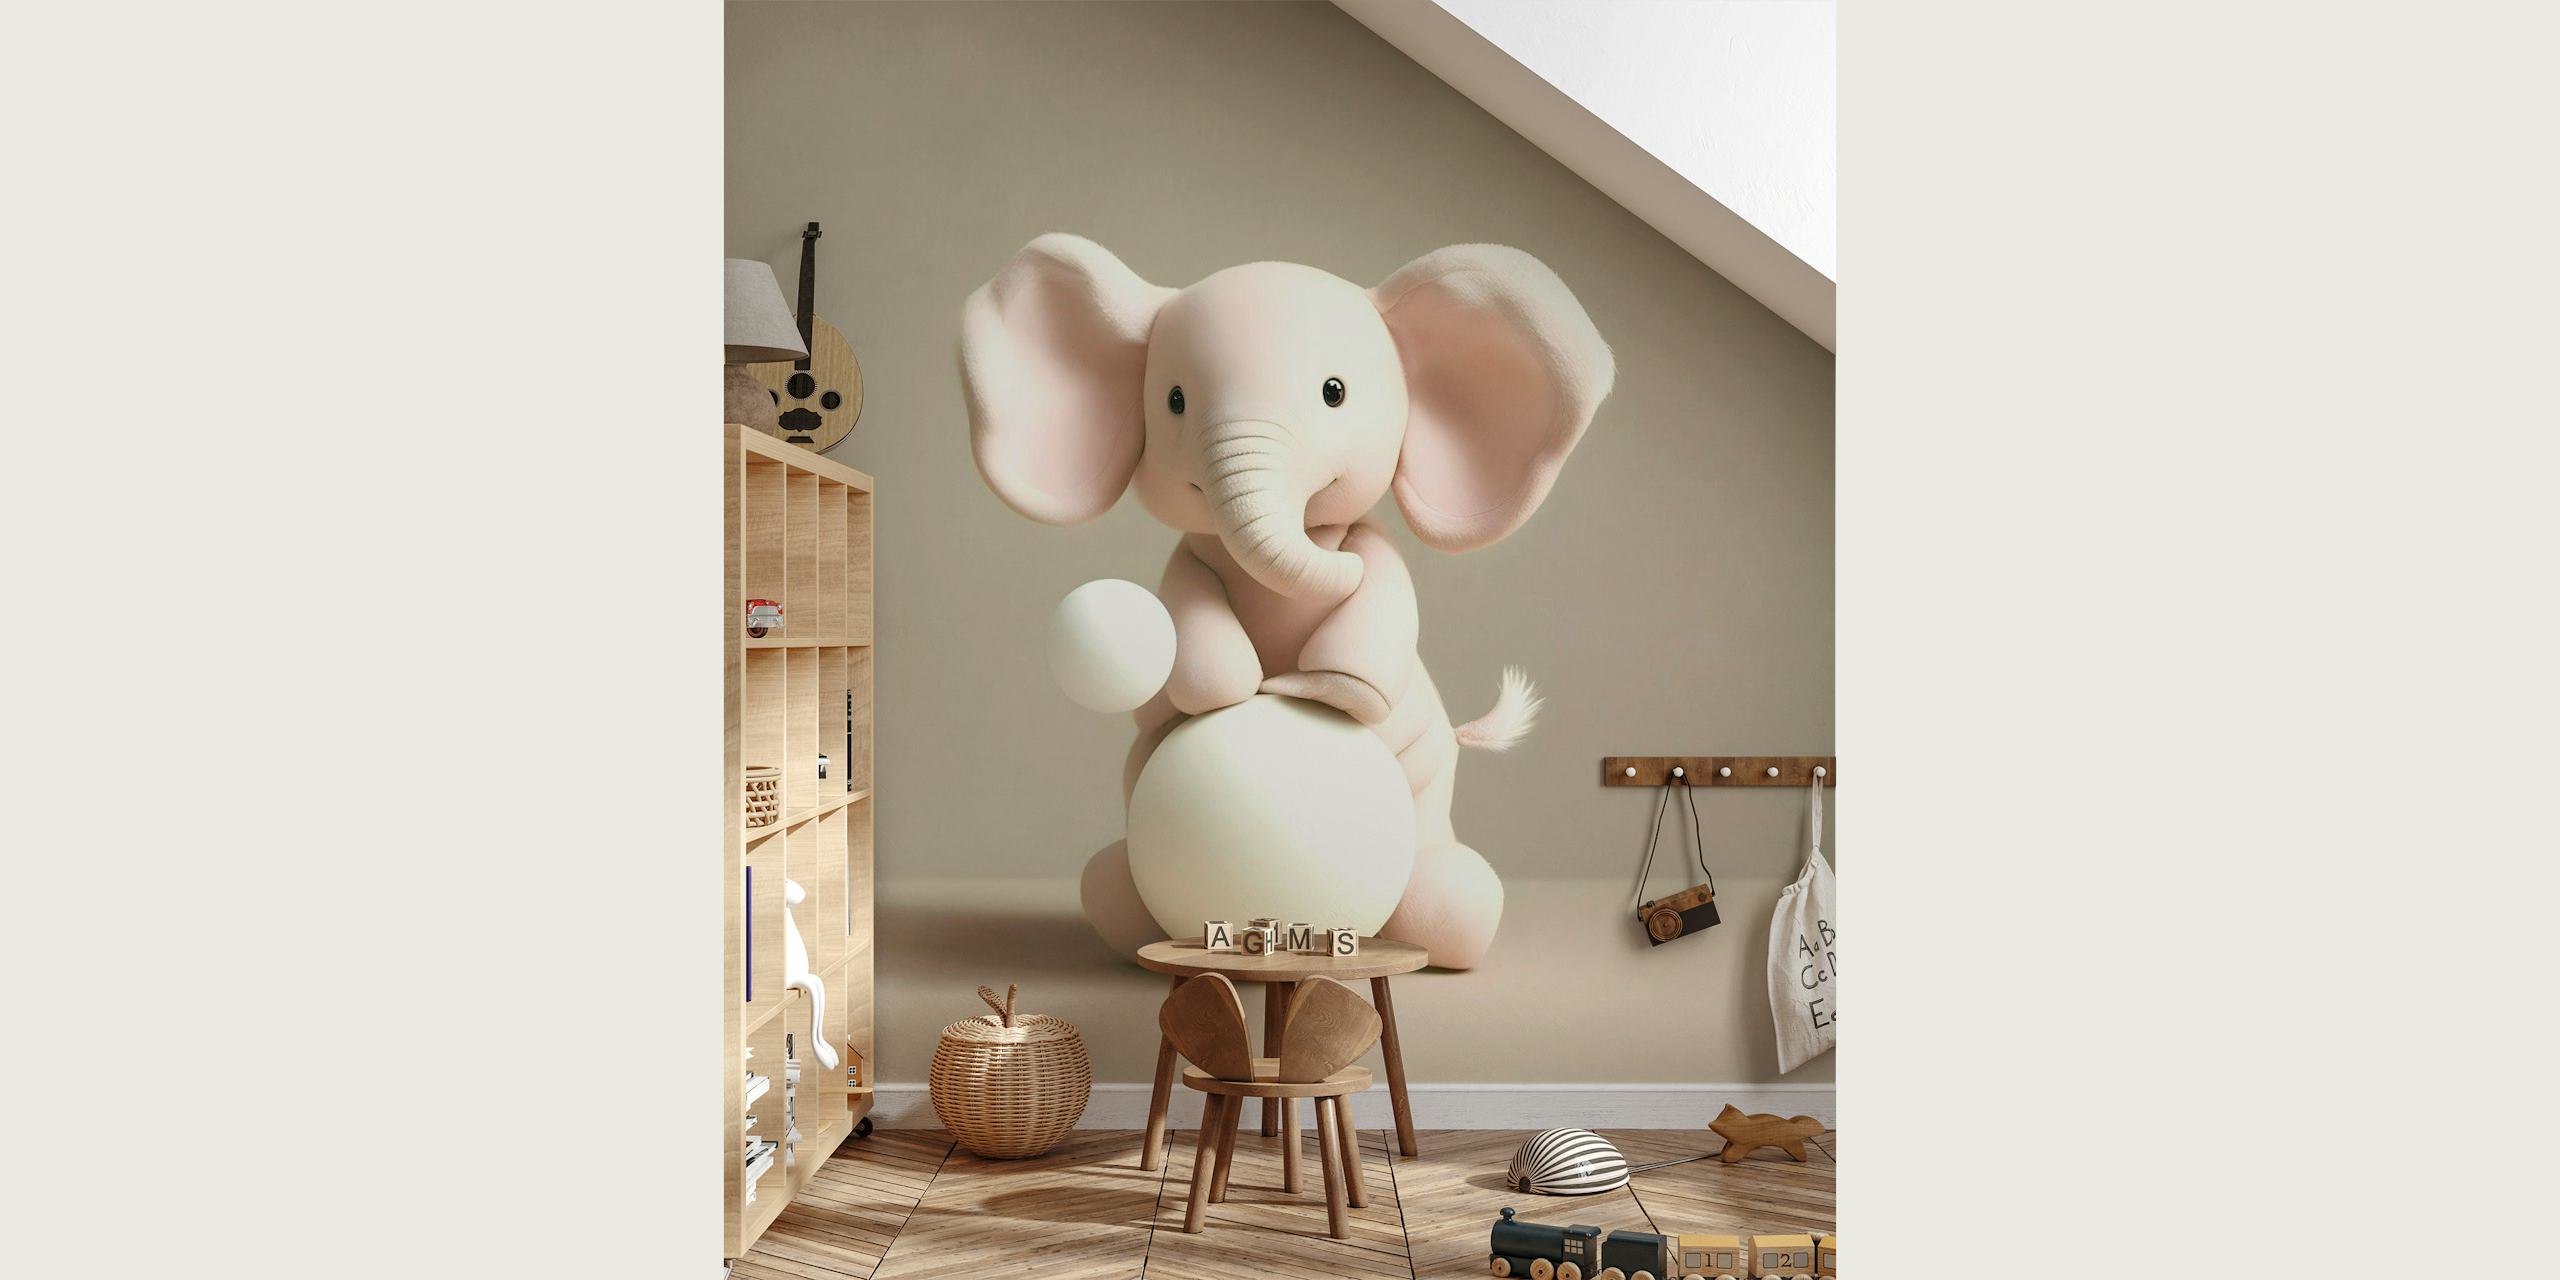 Söt beige elefant i tecknad stil som sitter på en bolltavla